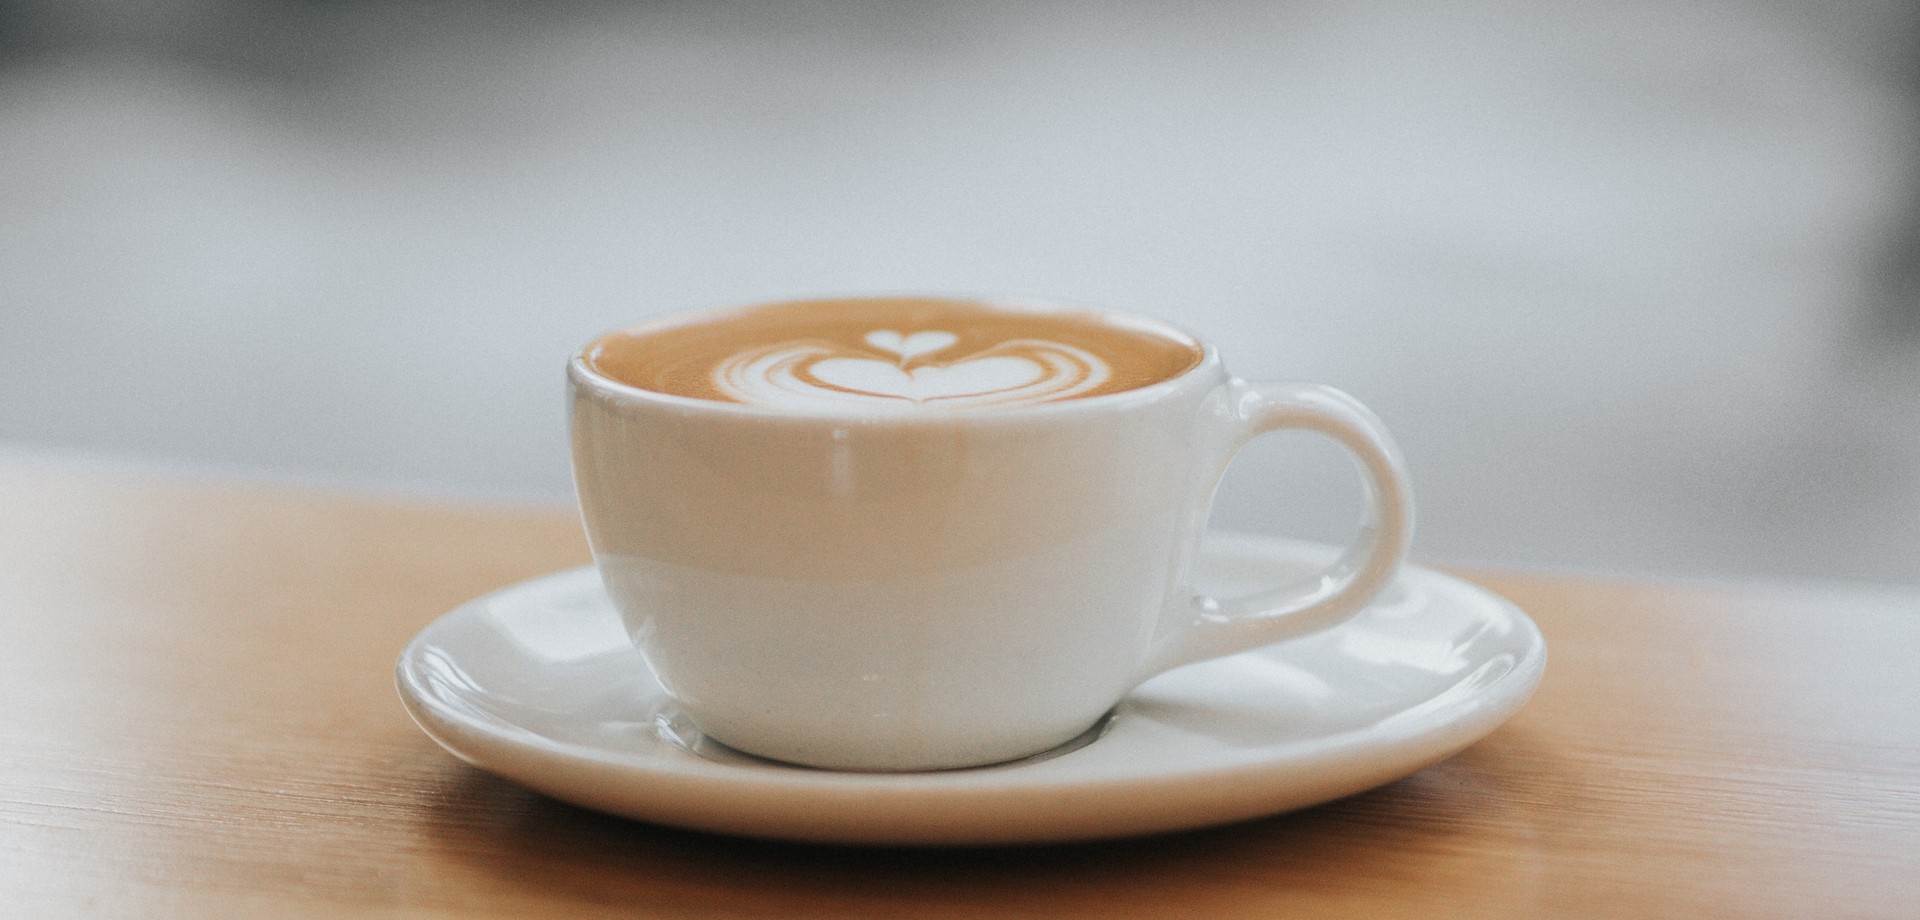 Kaffeetasse mit leckerem Kaffee und Milchschaum